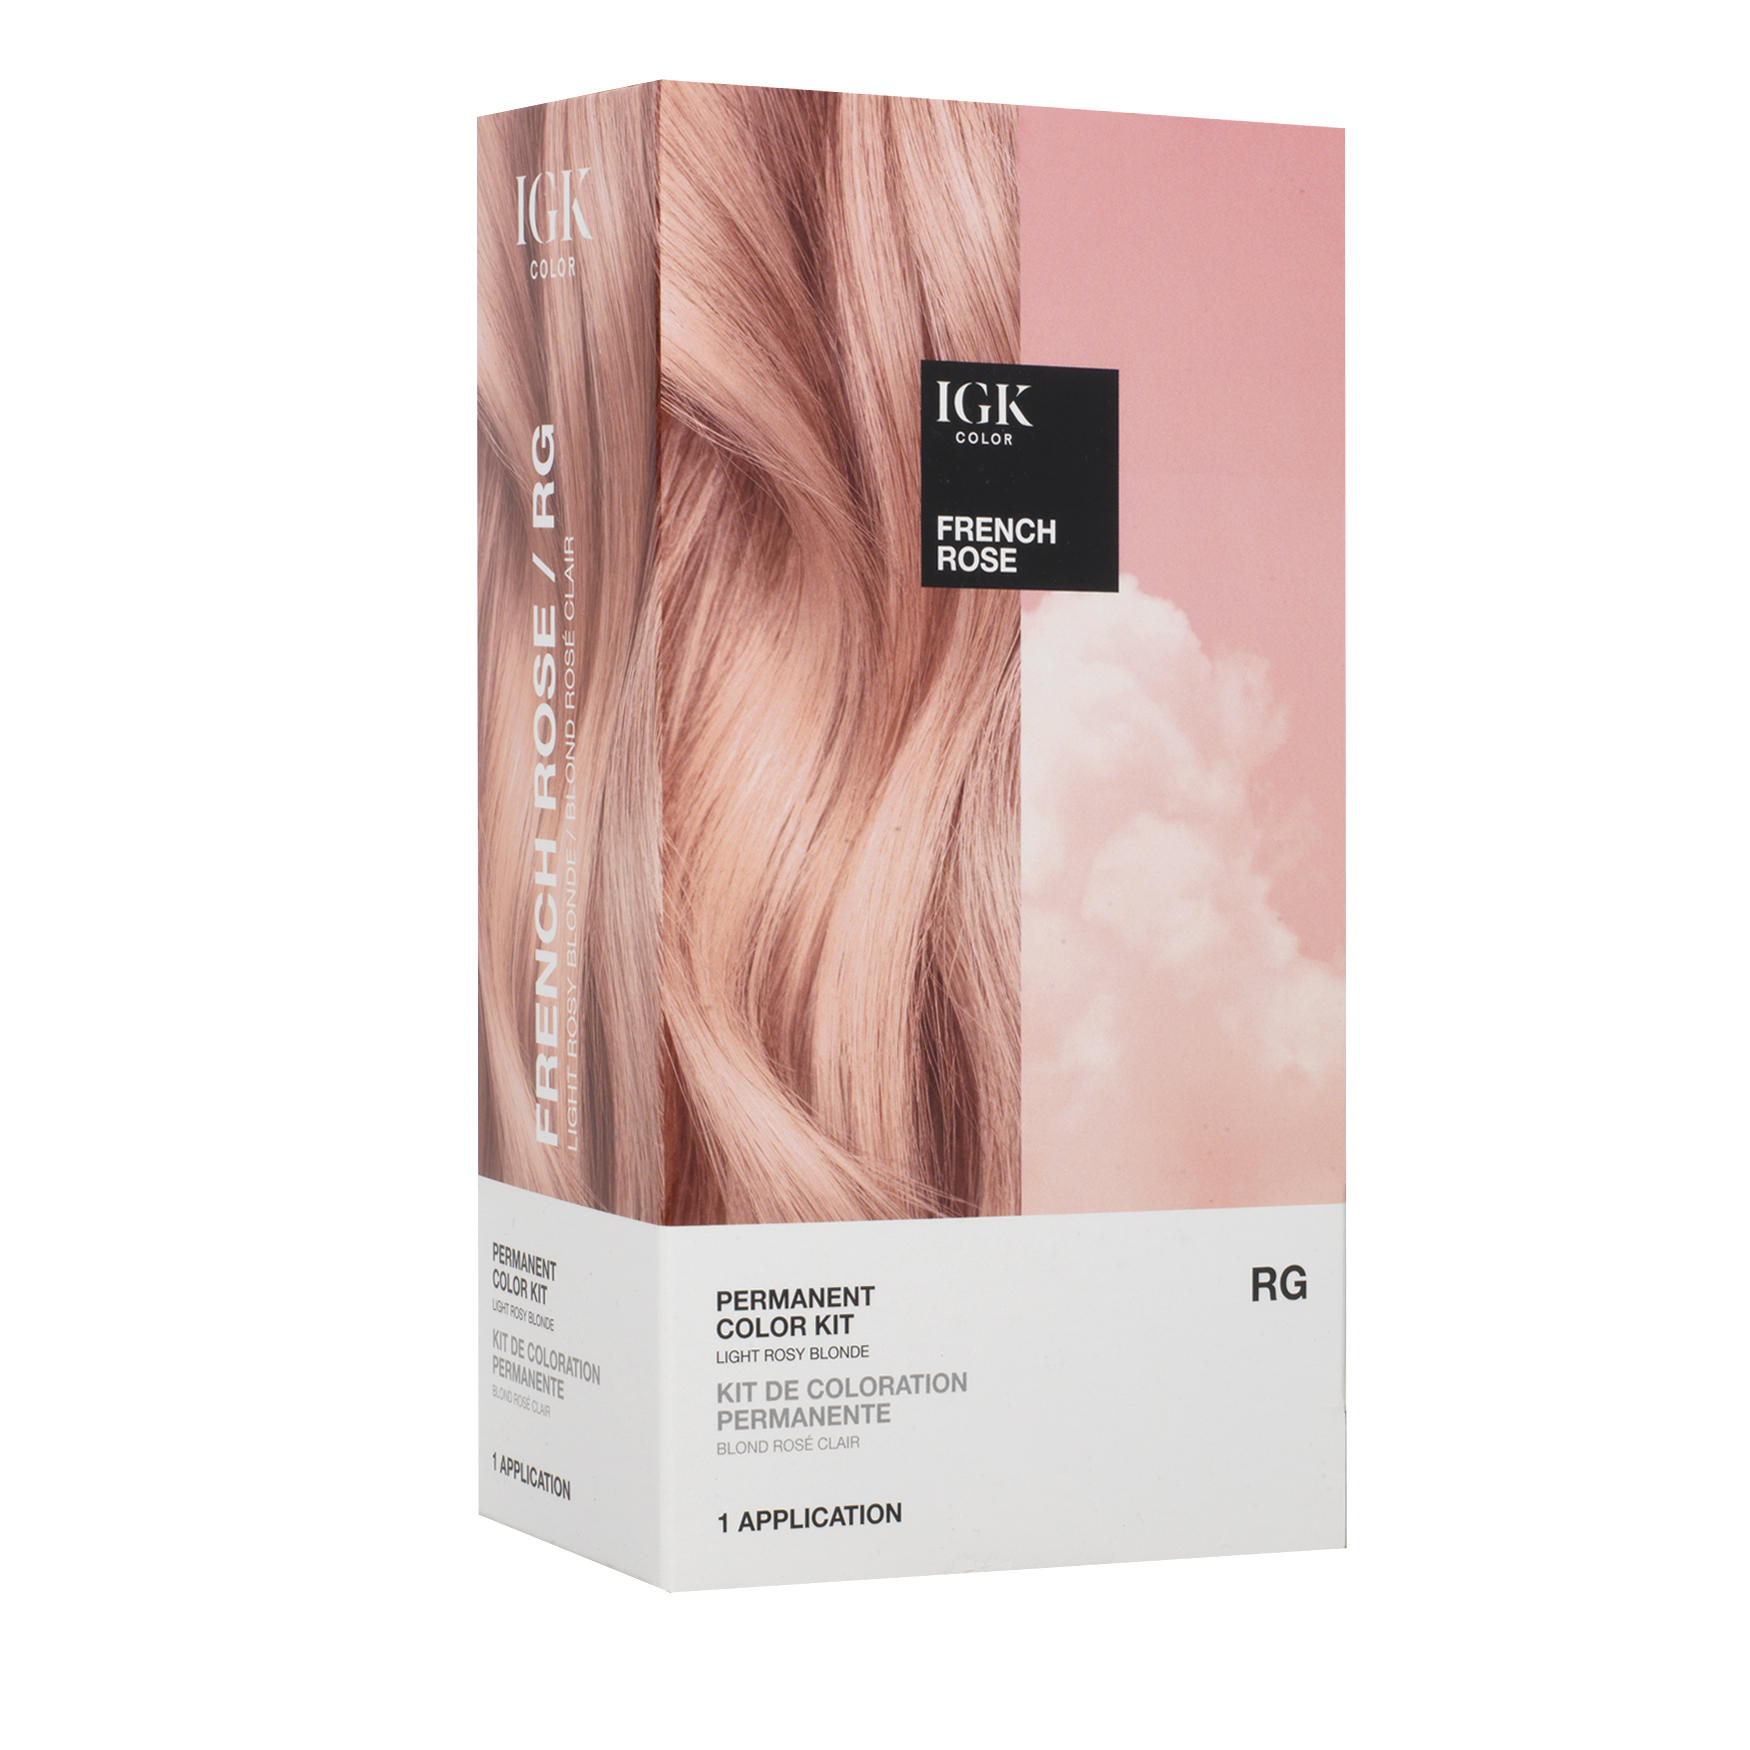 IGK Hair Kit de couleur permanente | Space NK